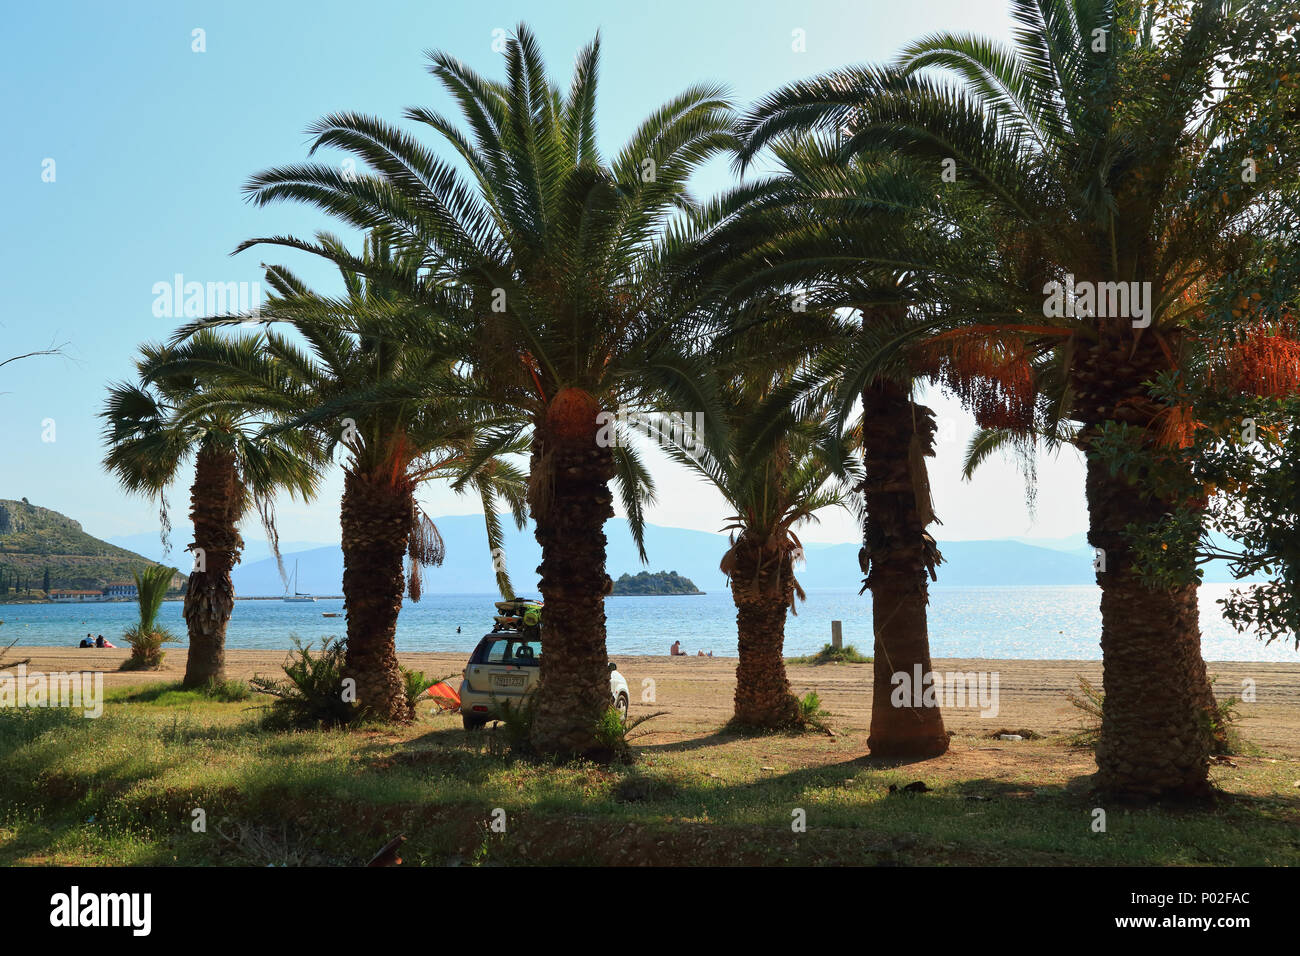 Palm trees on Karathona Beach, Nafplio Stock Photo